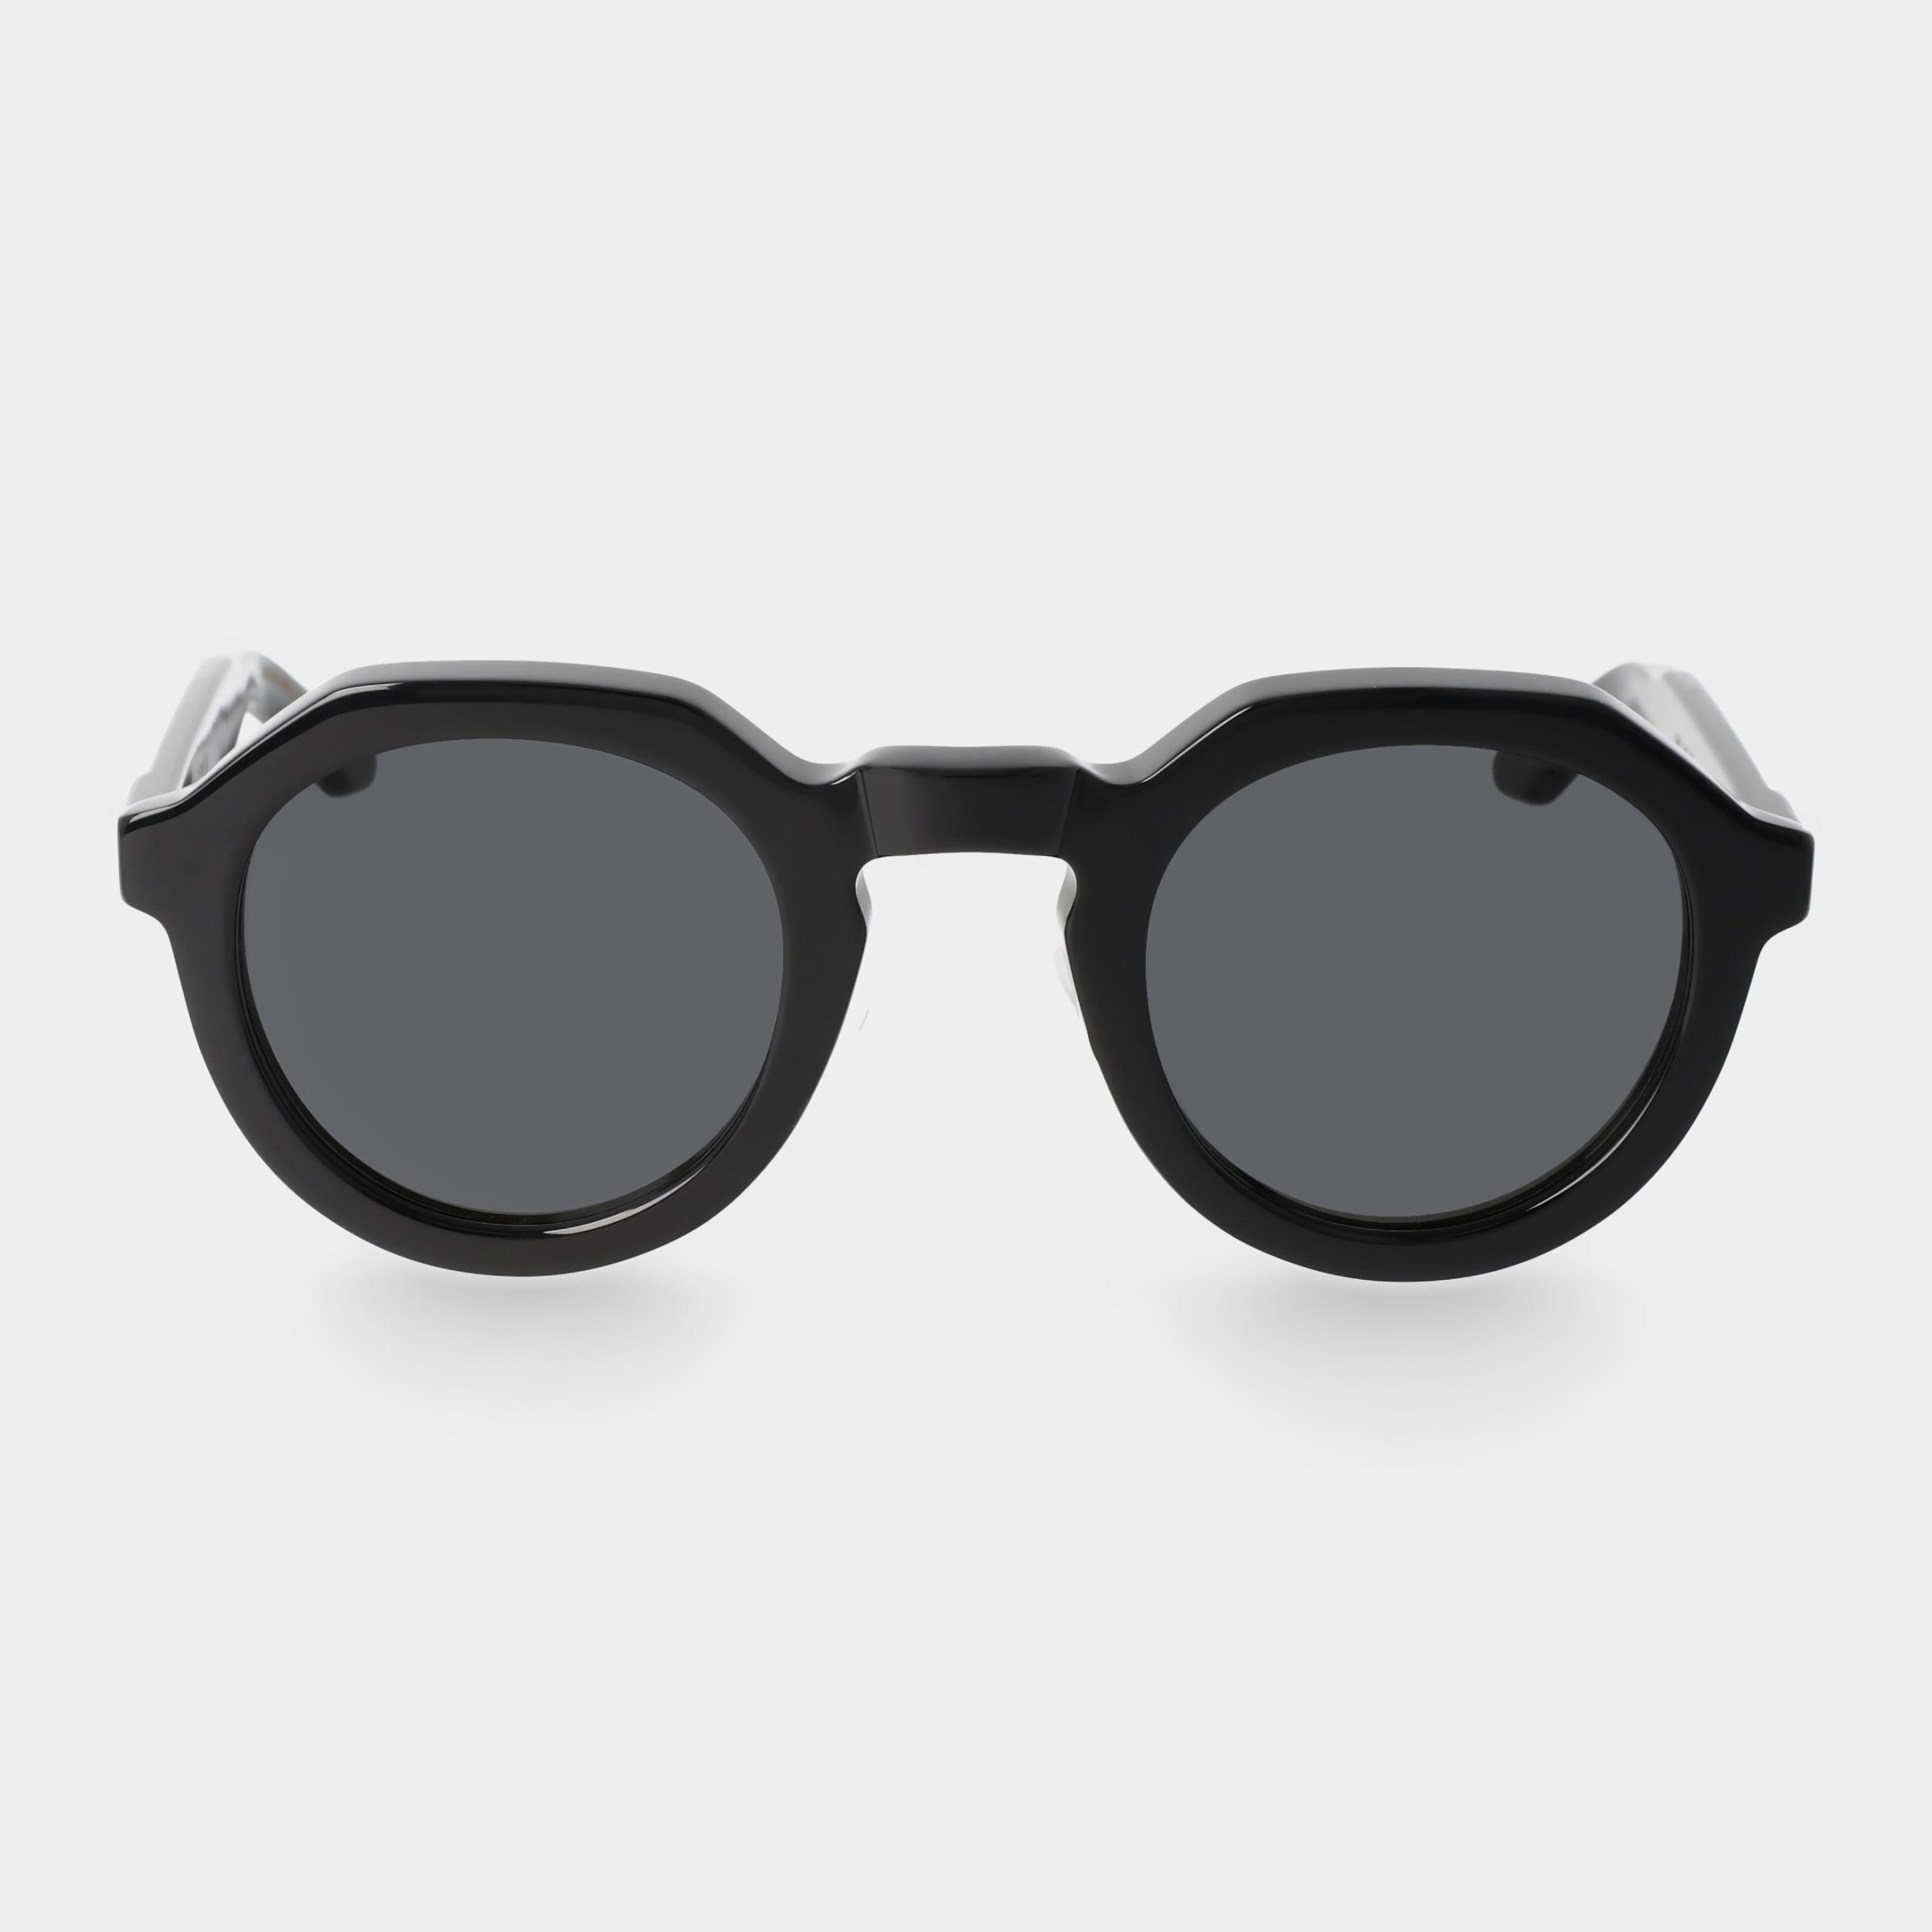 sunglasses-ivy-eco-black-grey-sustainable-tbd-eyewear